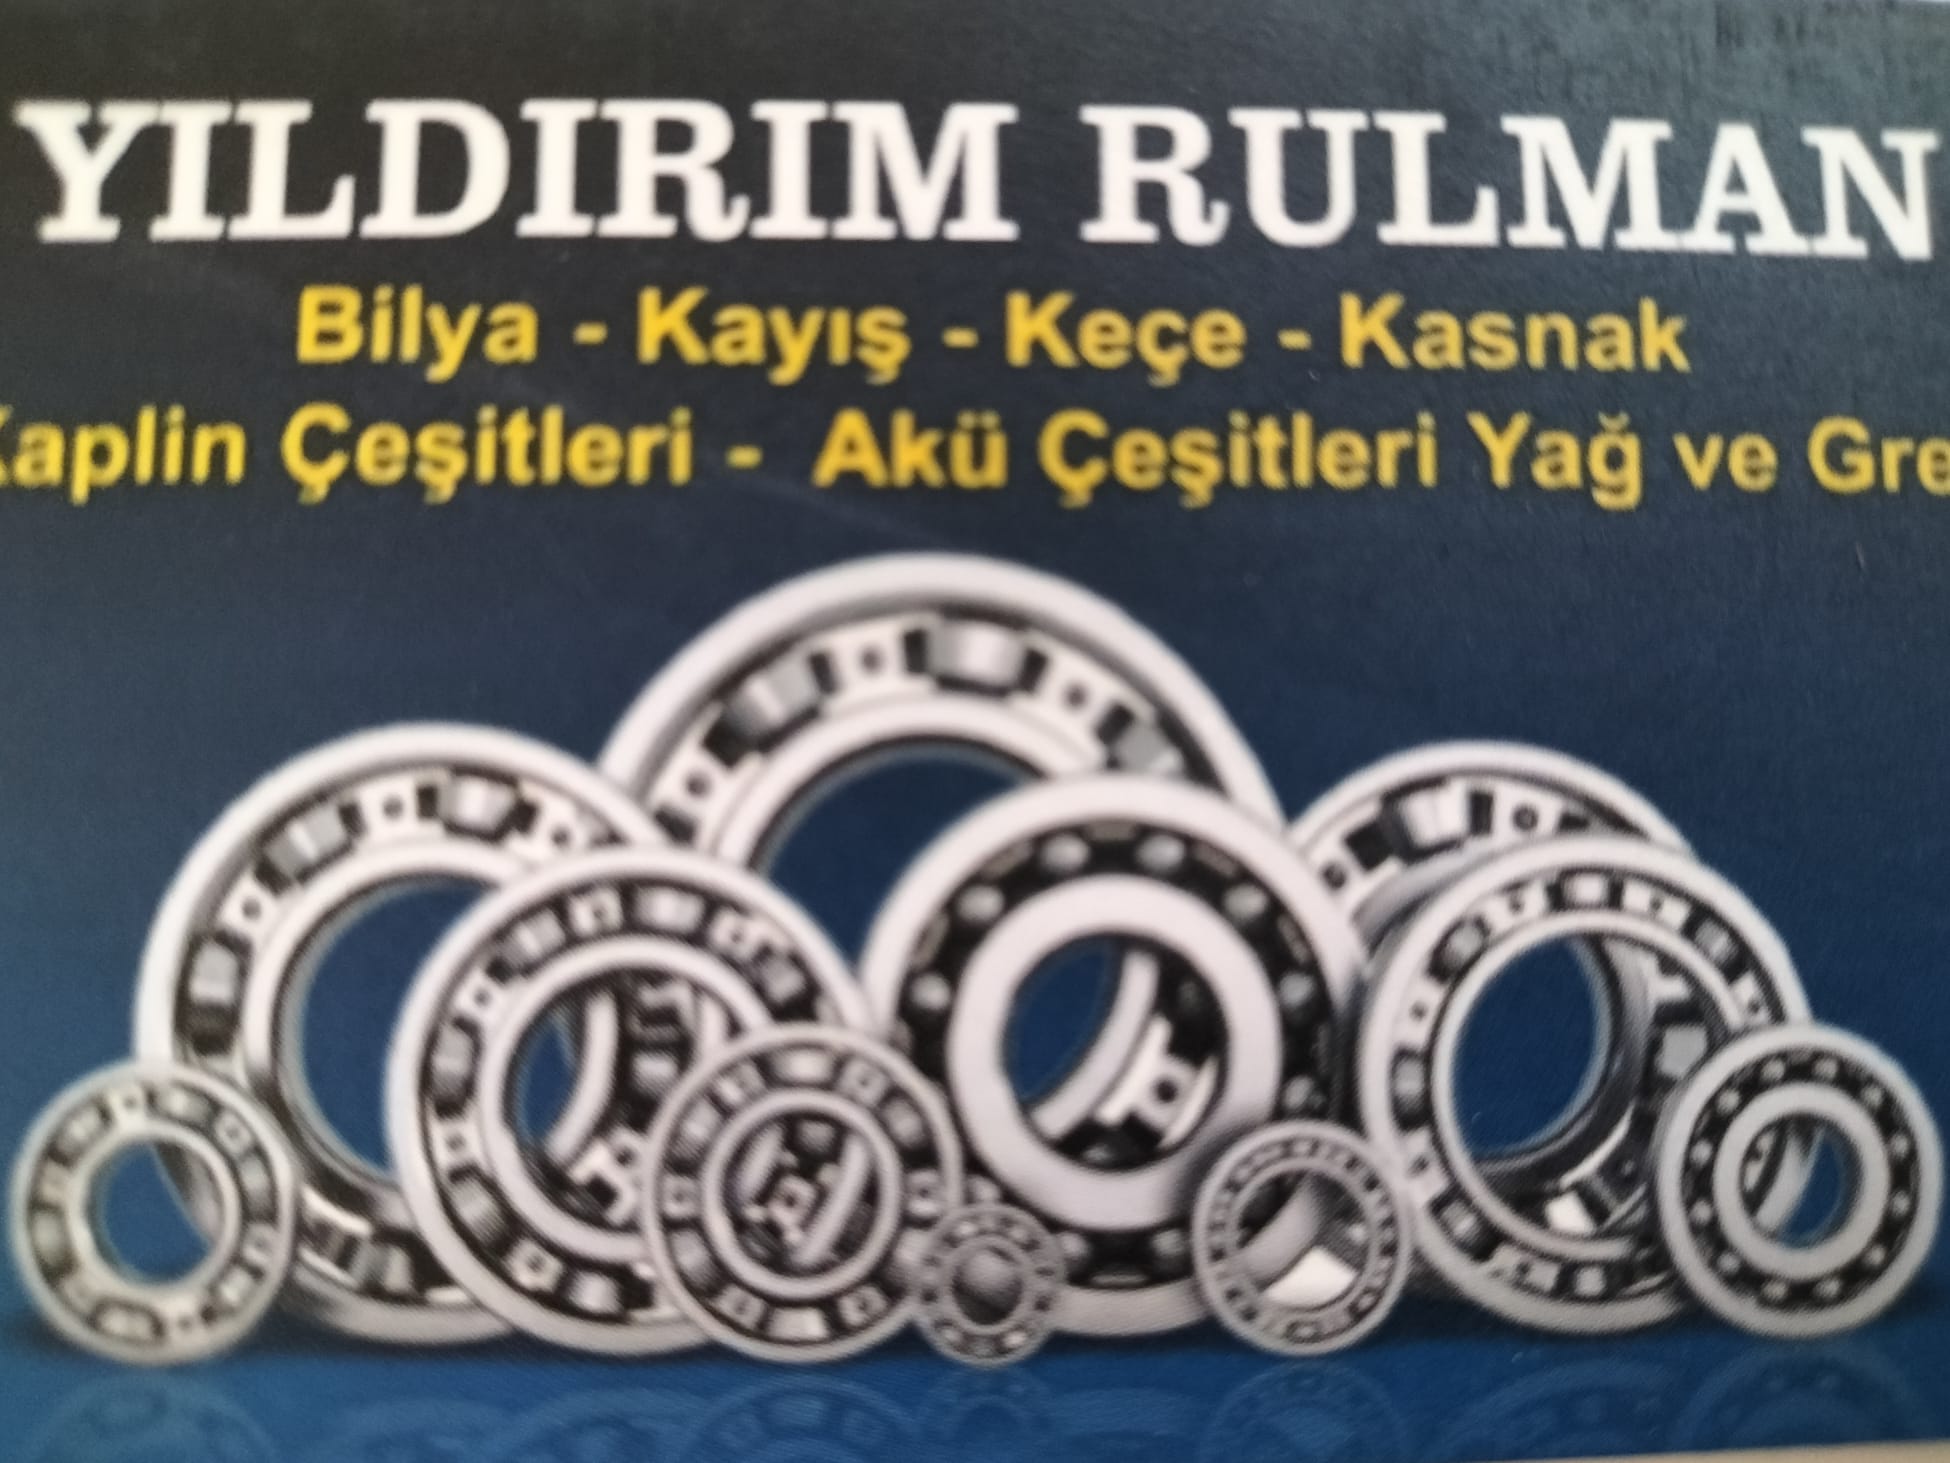 YILDIRIM TİCARET RULMAN / YILDIRIM RULMAN / Mehmet YILDIRIM Logo